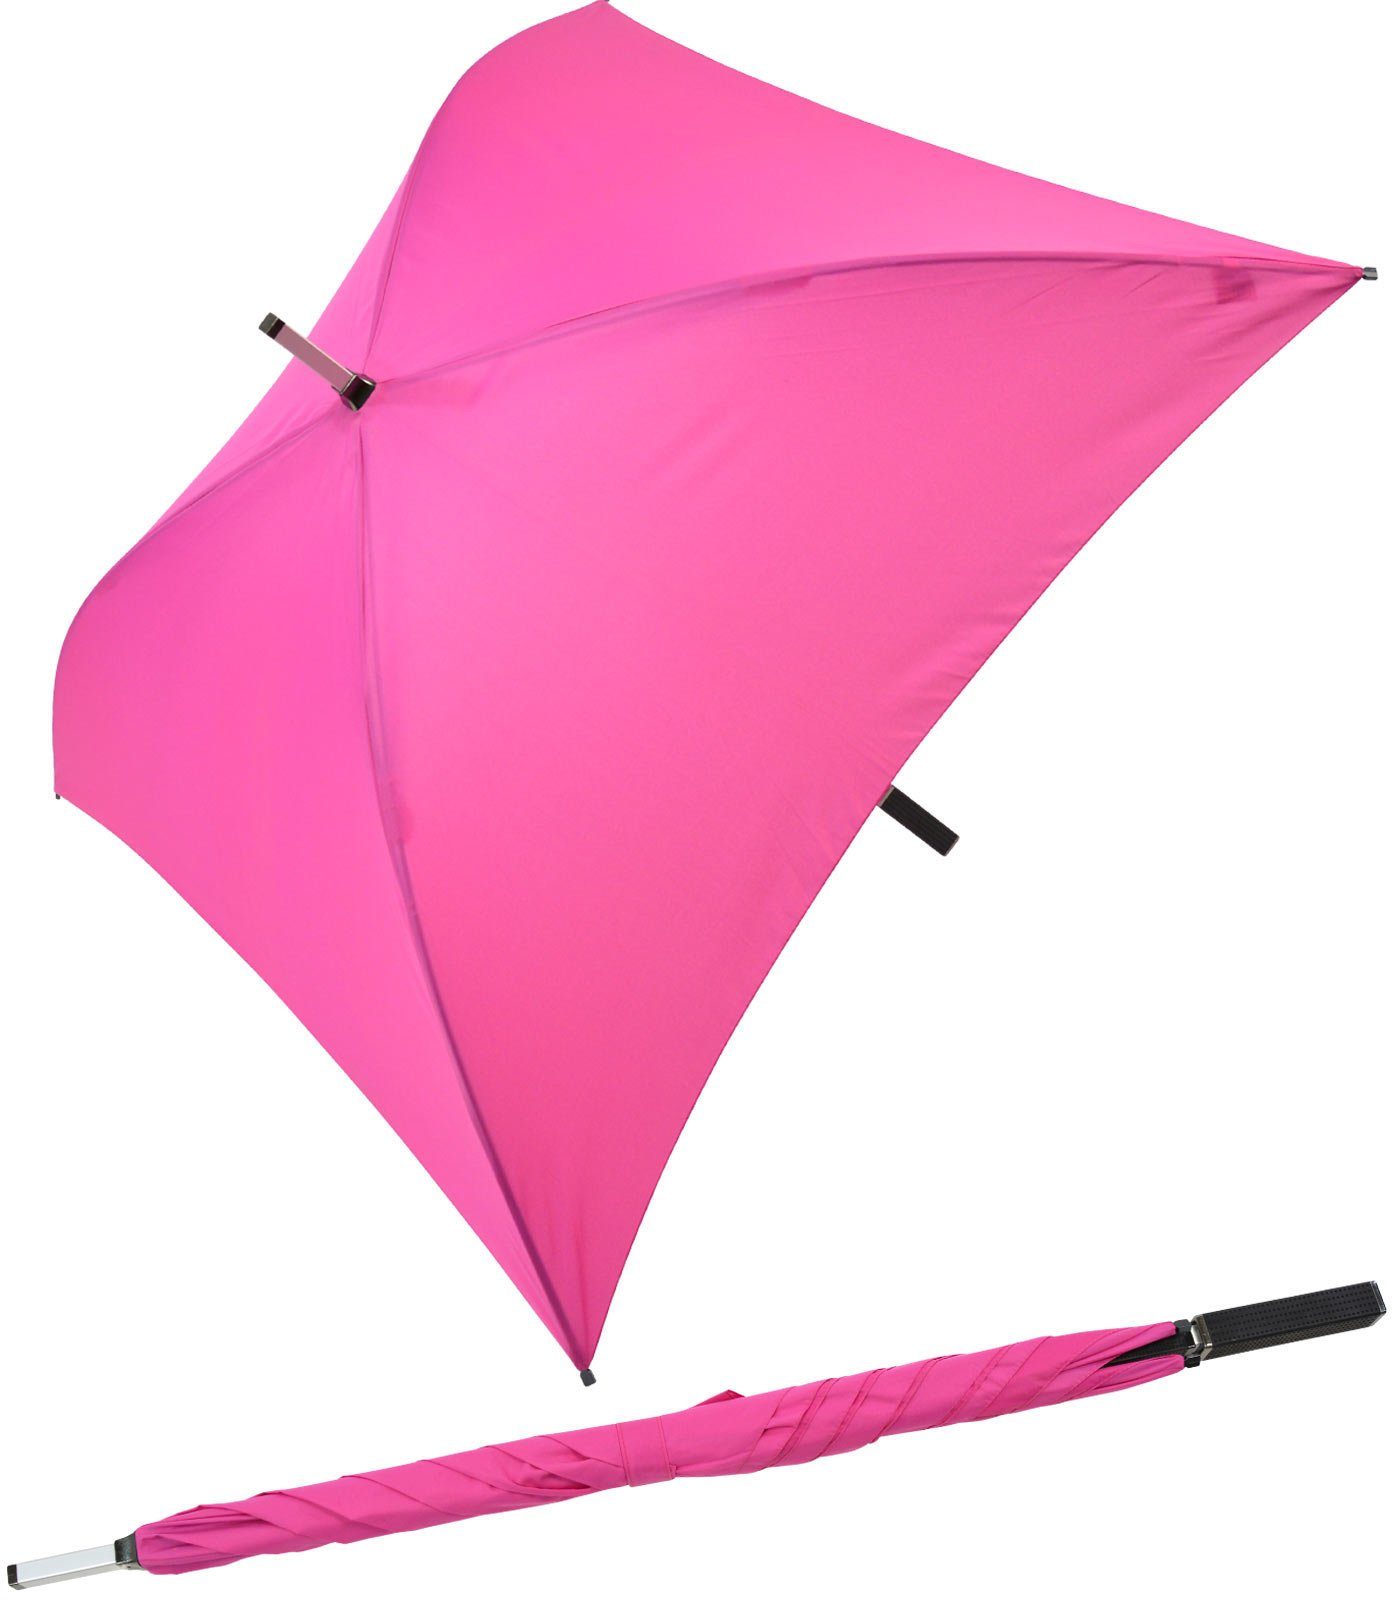 Impliva Langregenschirm All Square® voll quadratischer Regenschirm, der ganz besondere Regenschirm pink